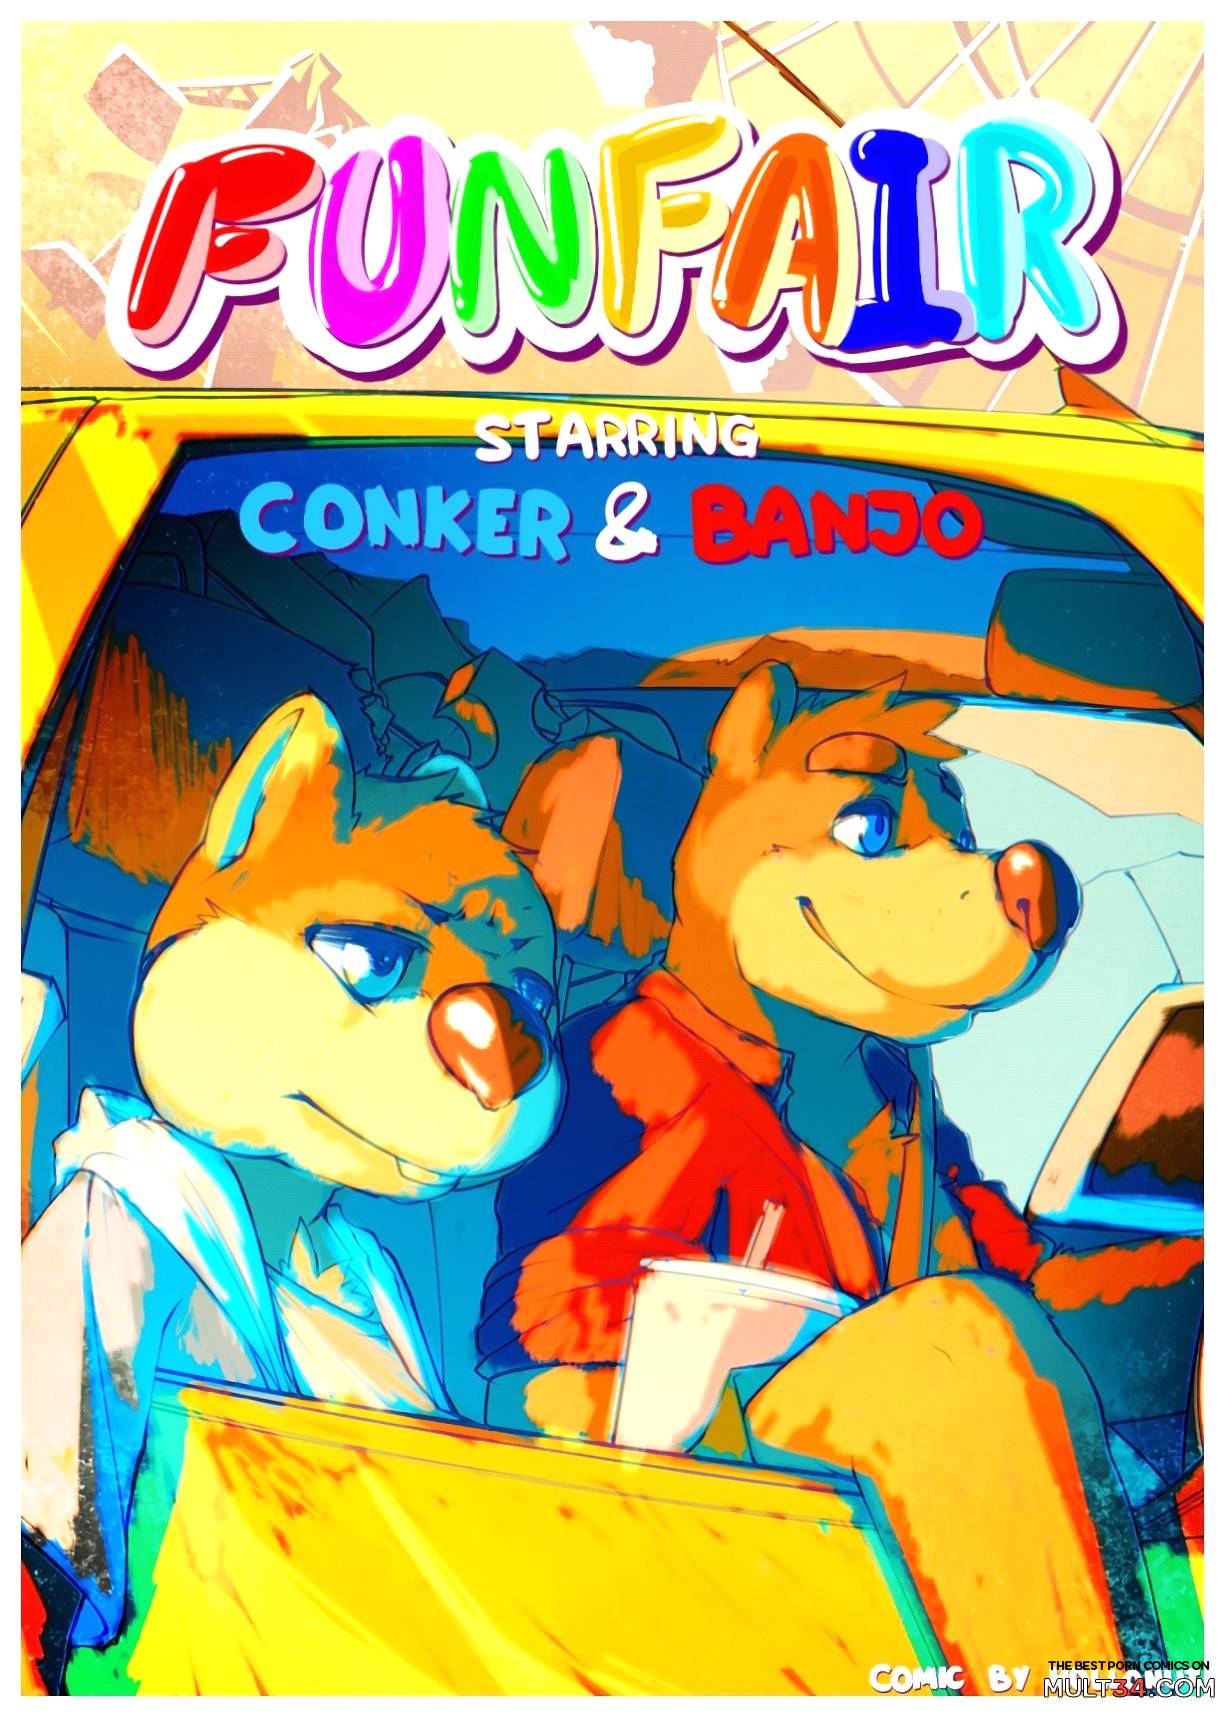 Conker and banjo porn comics